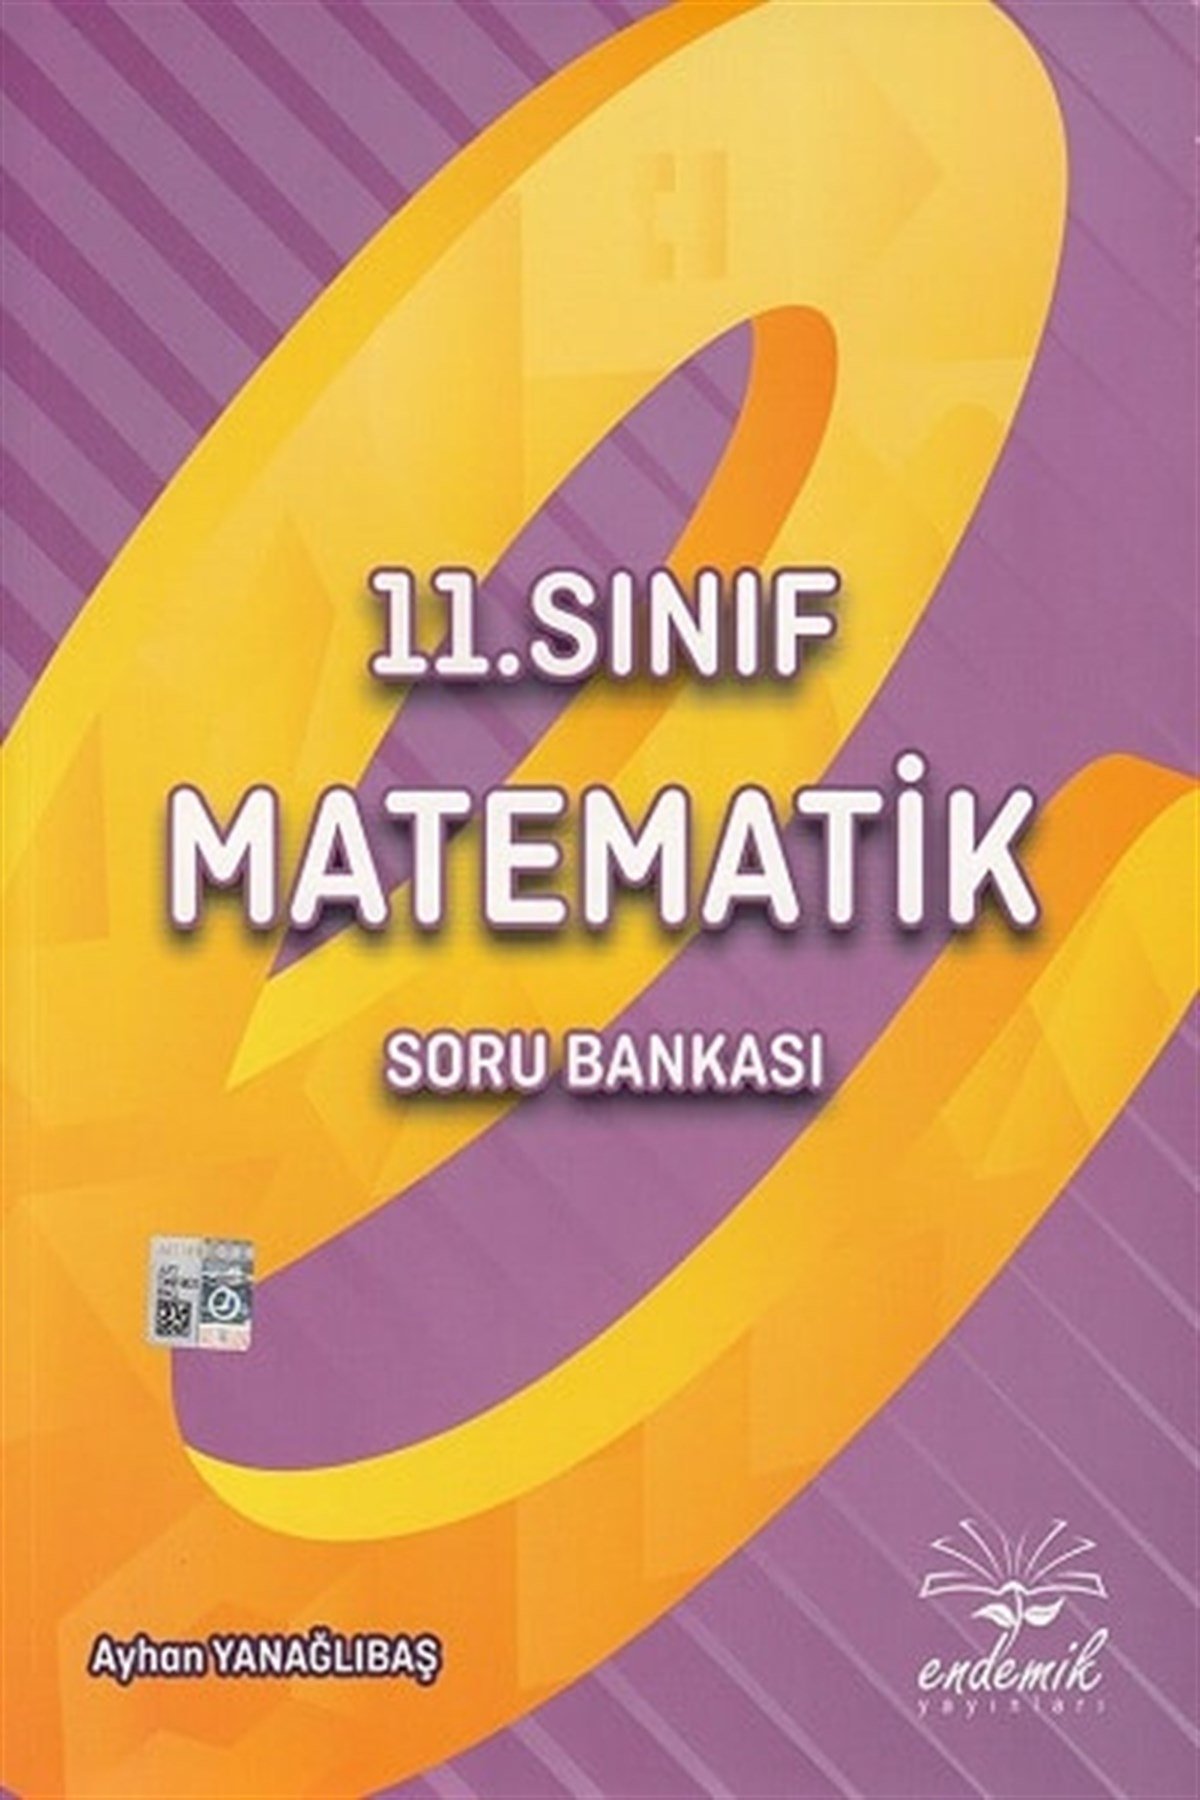 Endemik Yayınları 11. Sınıf Matematik Soru Bankası